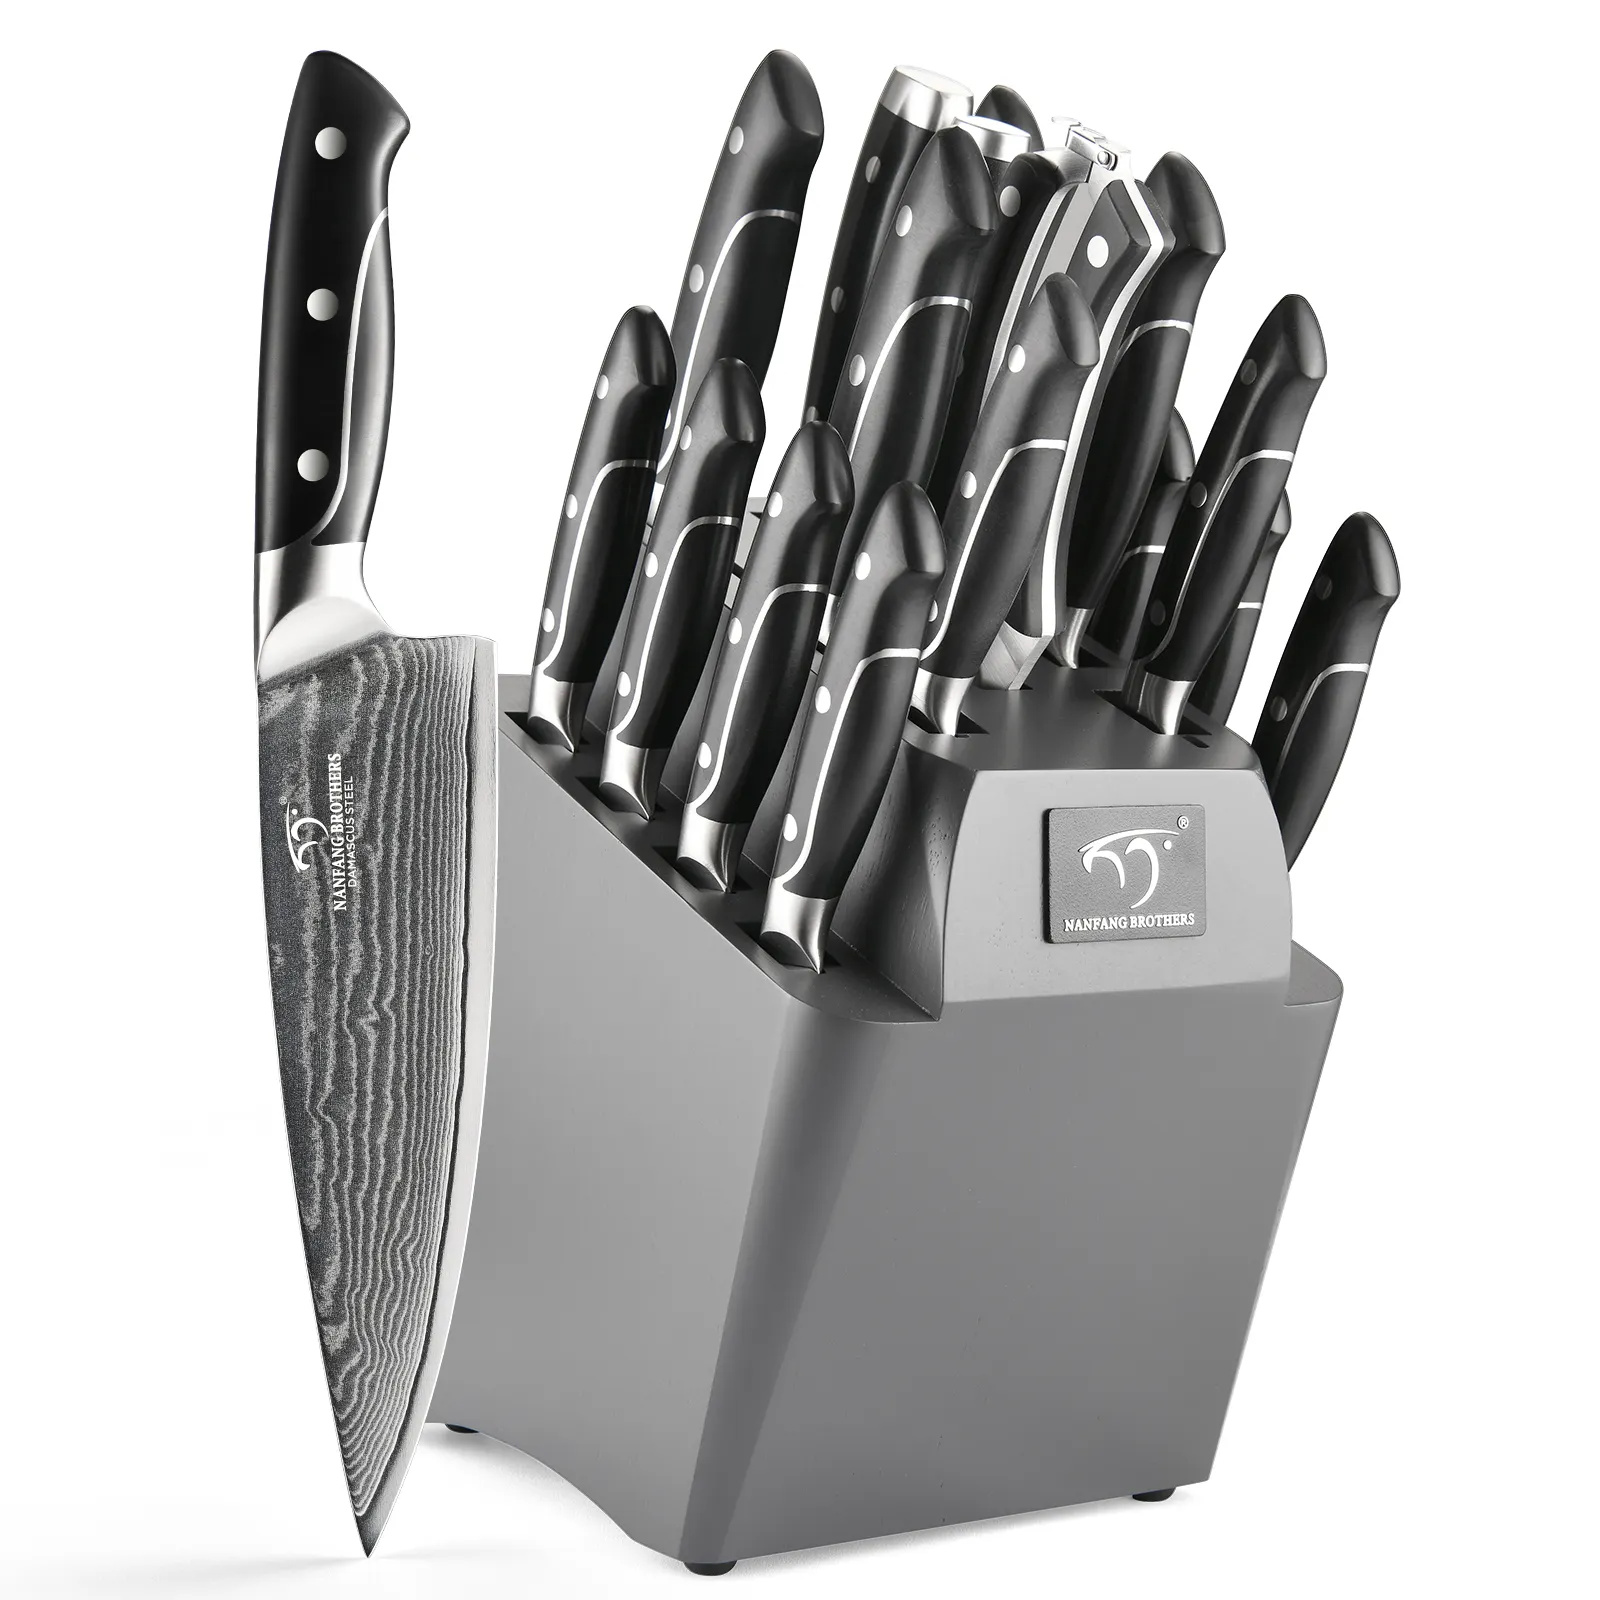 Juego de cuchillos de cocina de acero damasco, Santoku Premium, con mango de ABS, 18 piezas, gran oferta